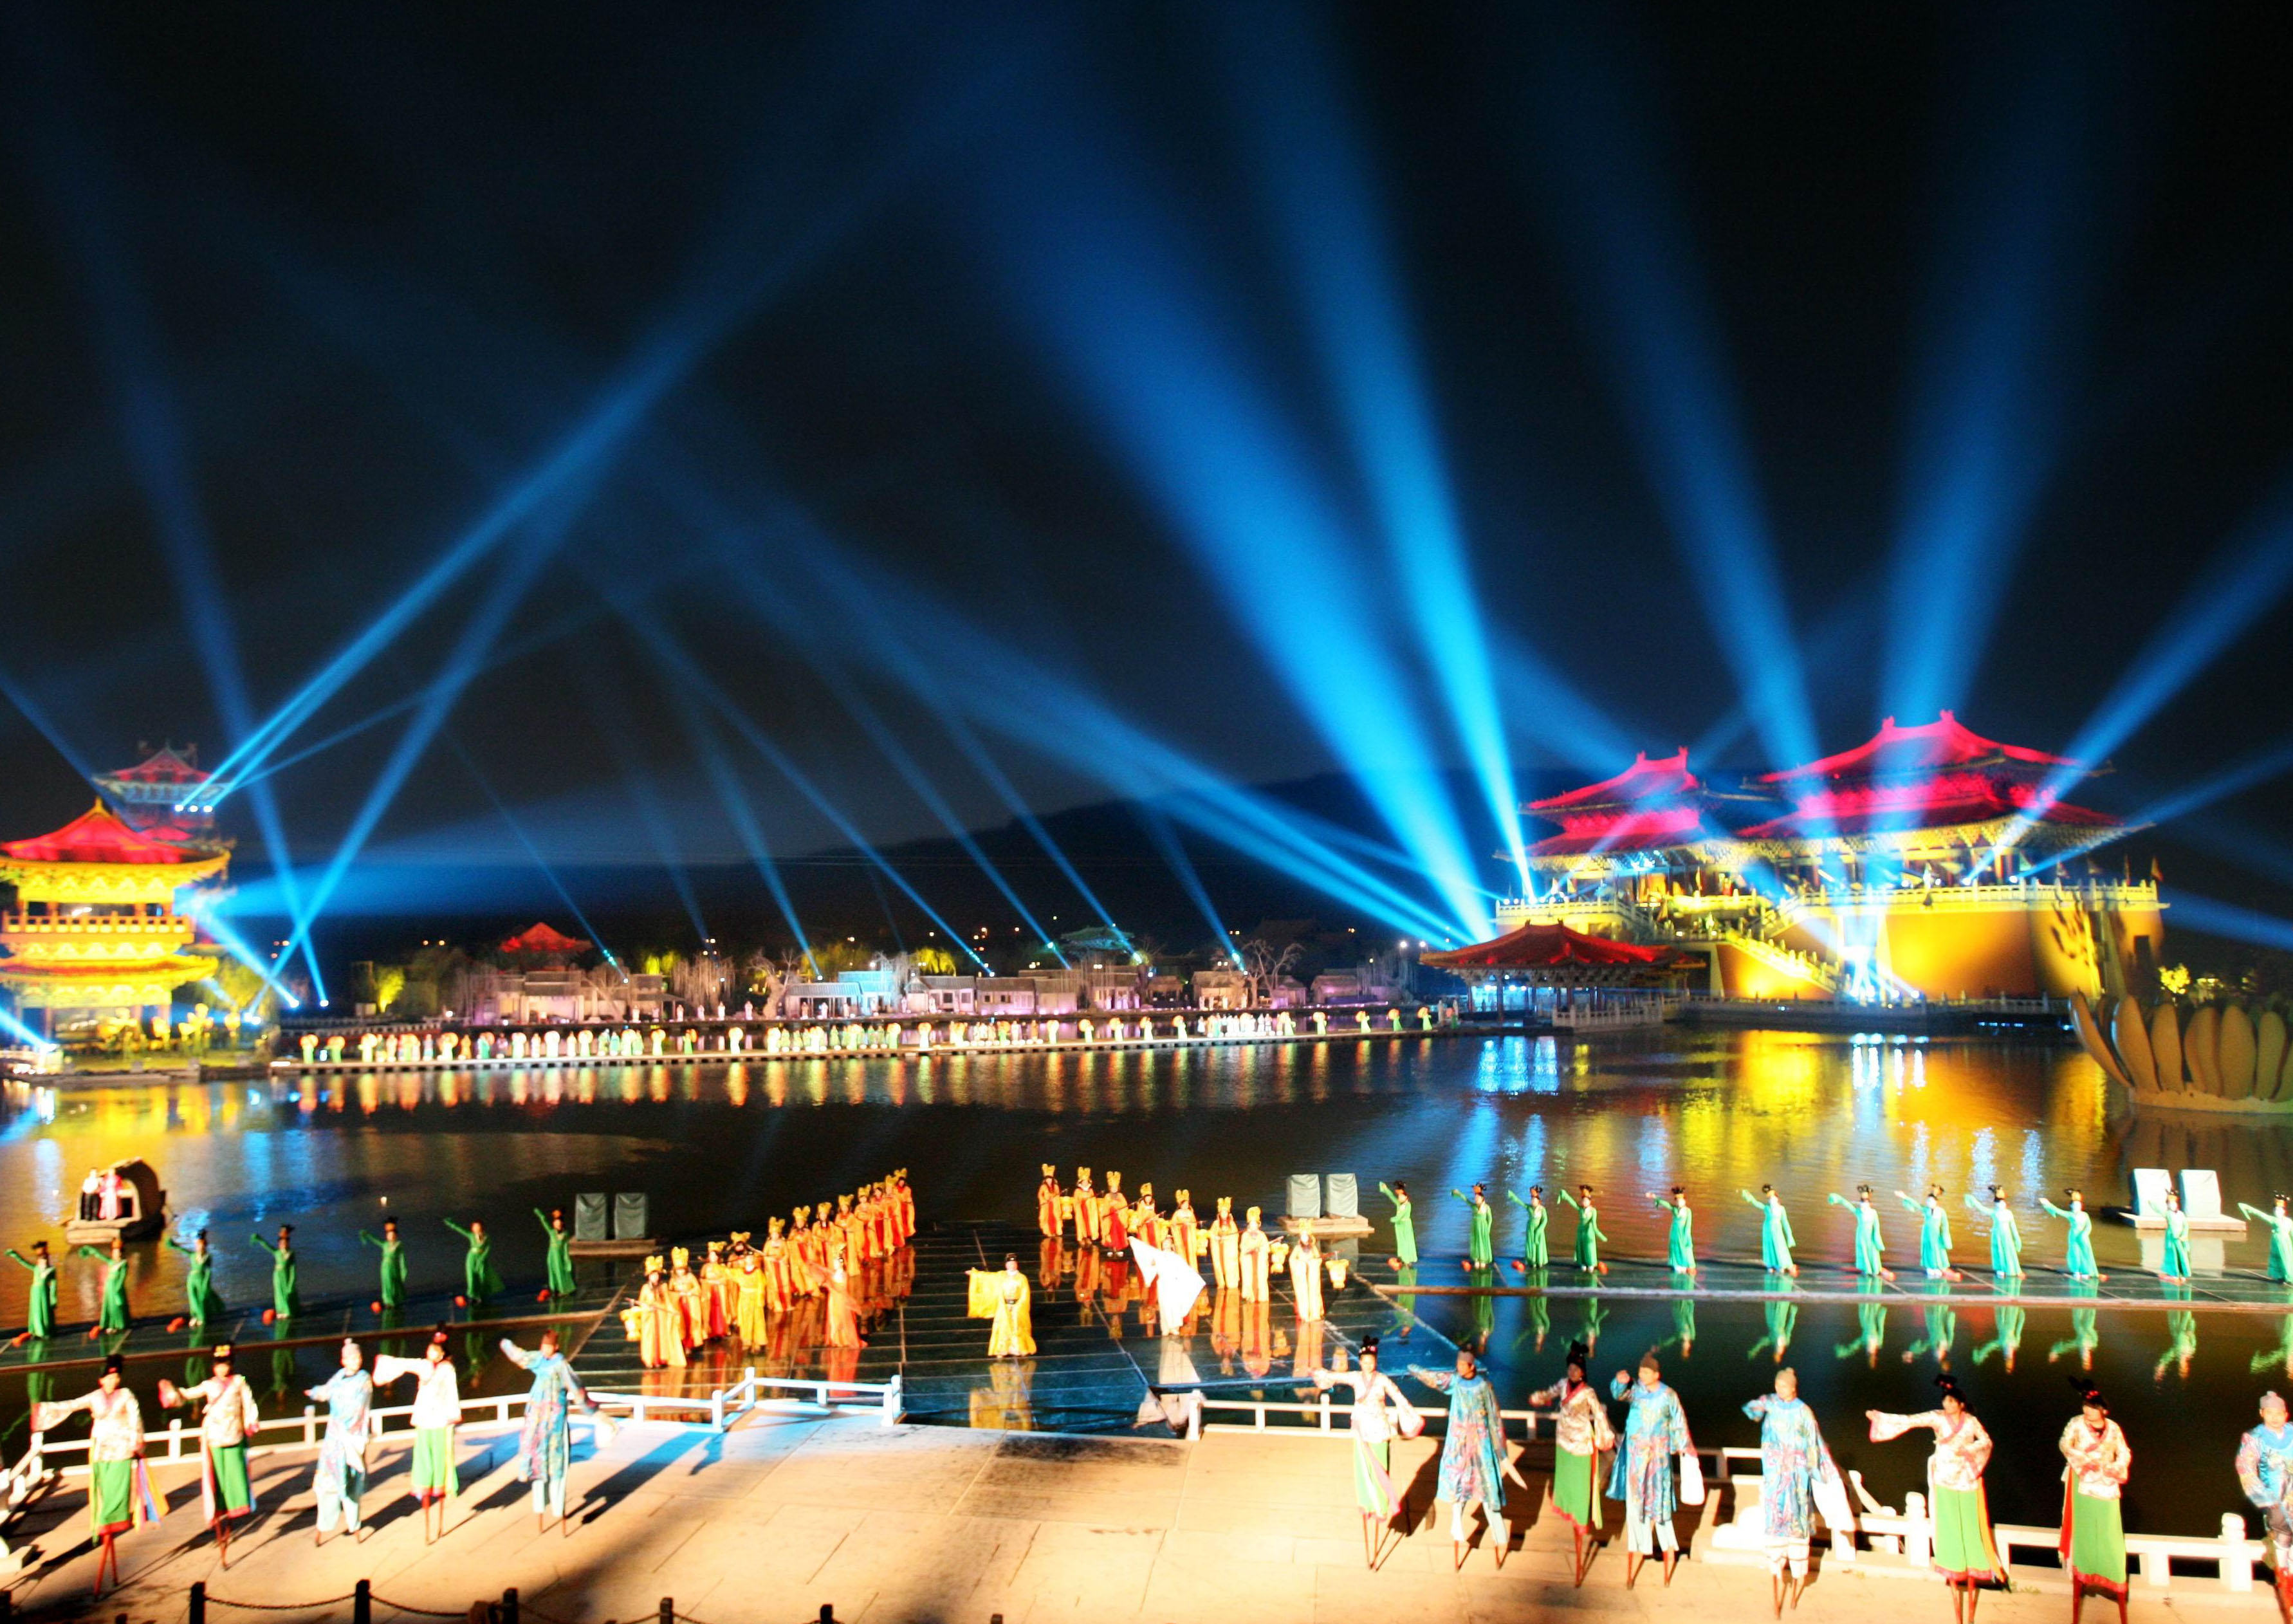  老家河南网-开封首届国际灯笼节于2018年春节期间开幕